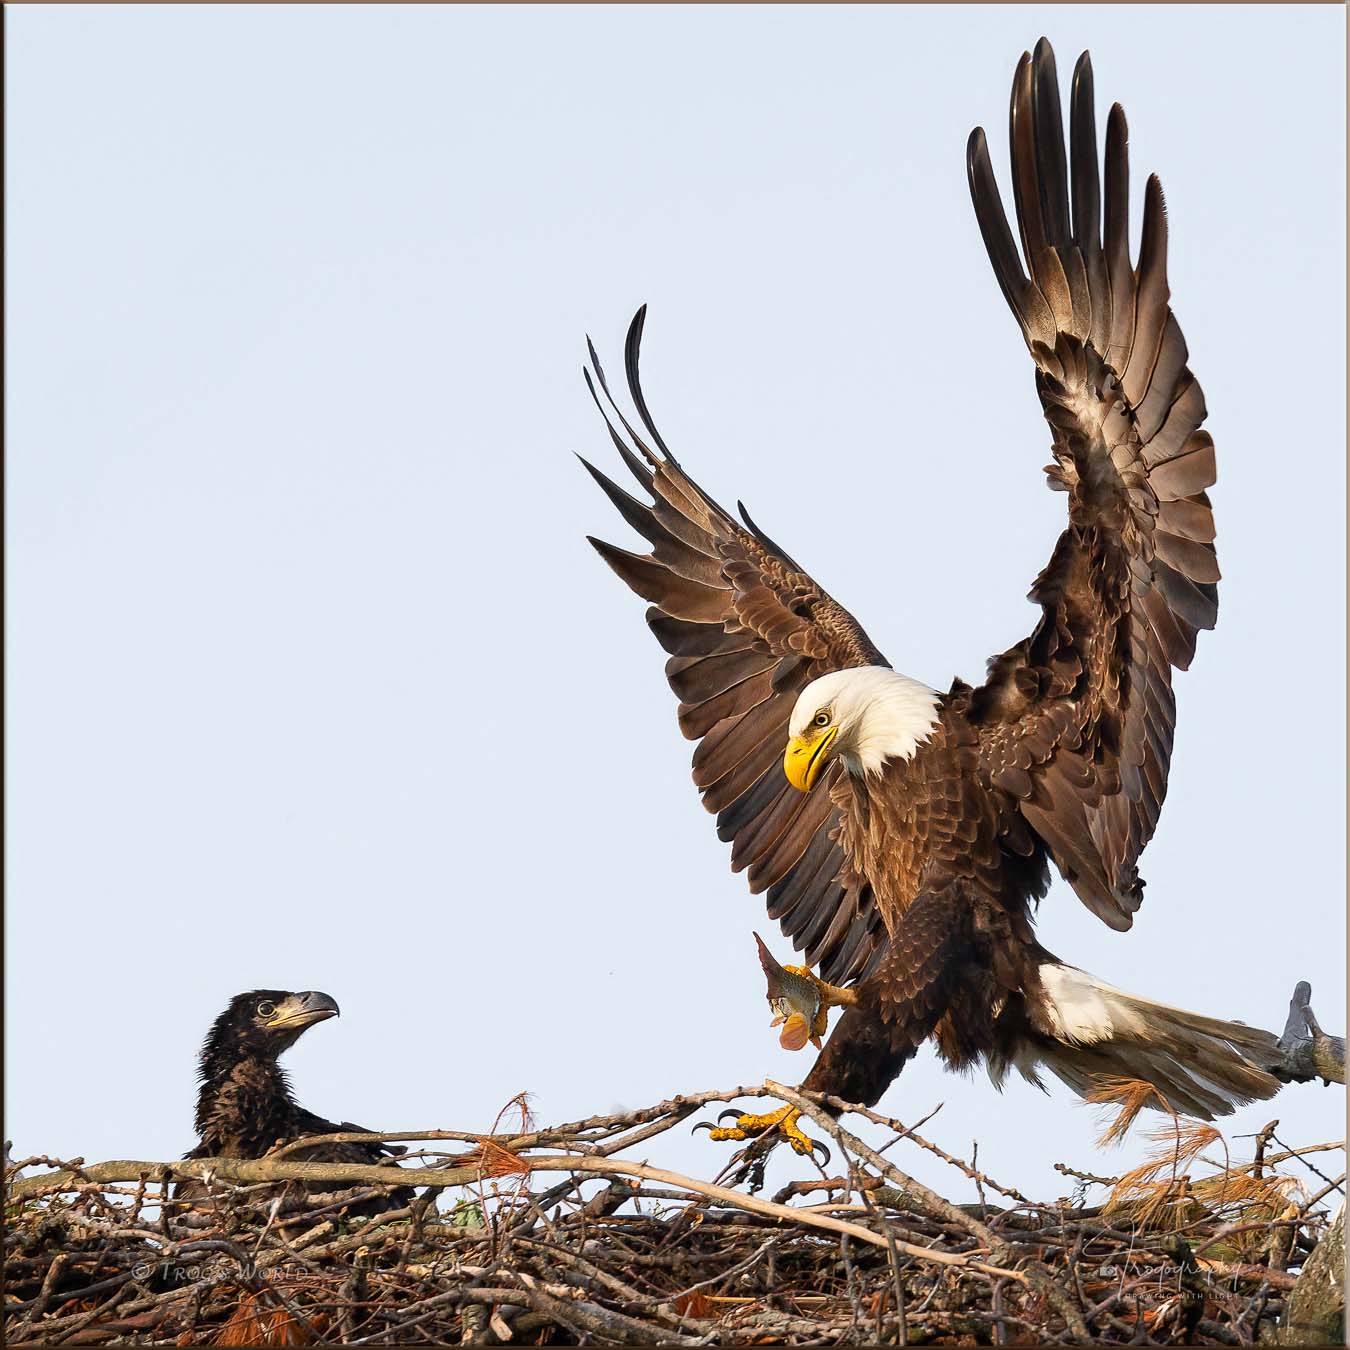 Bald Eagle delivering a fish for the eaglet